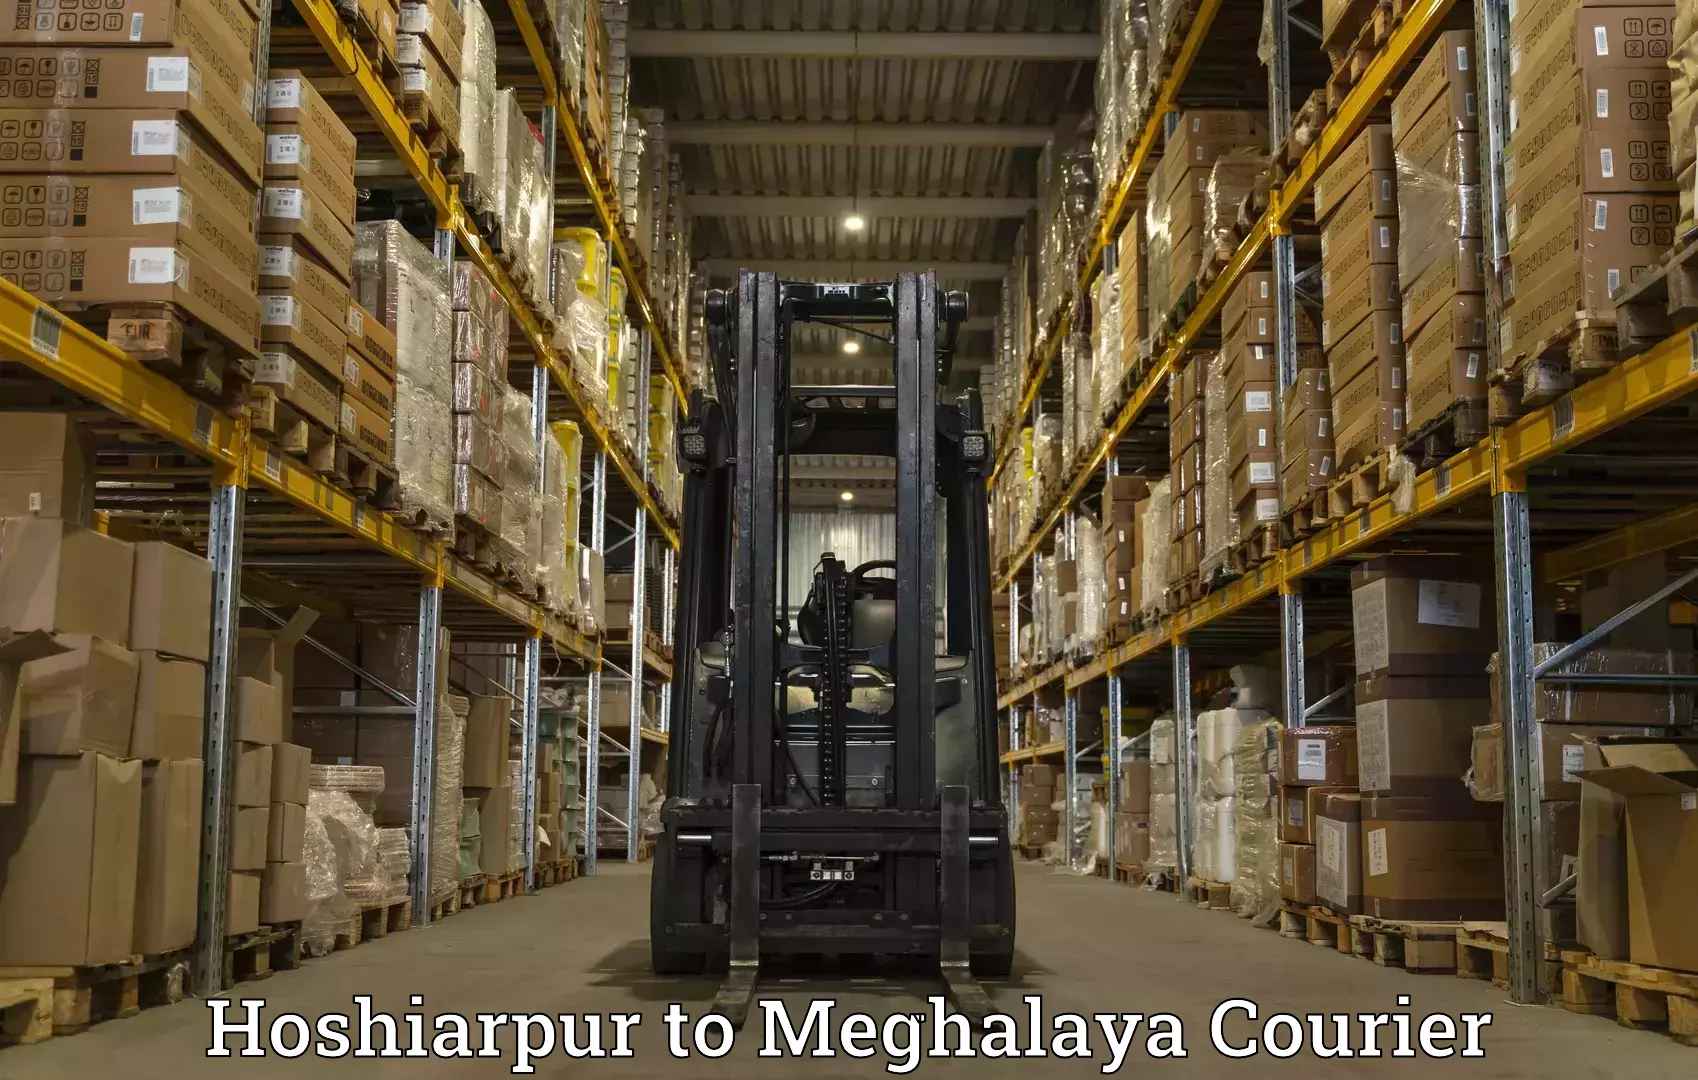 Express package handling Hoshiarpur to Meghalaya